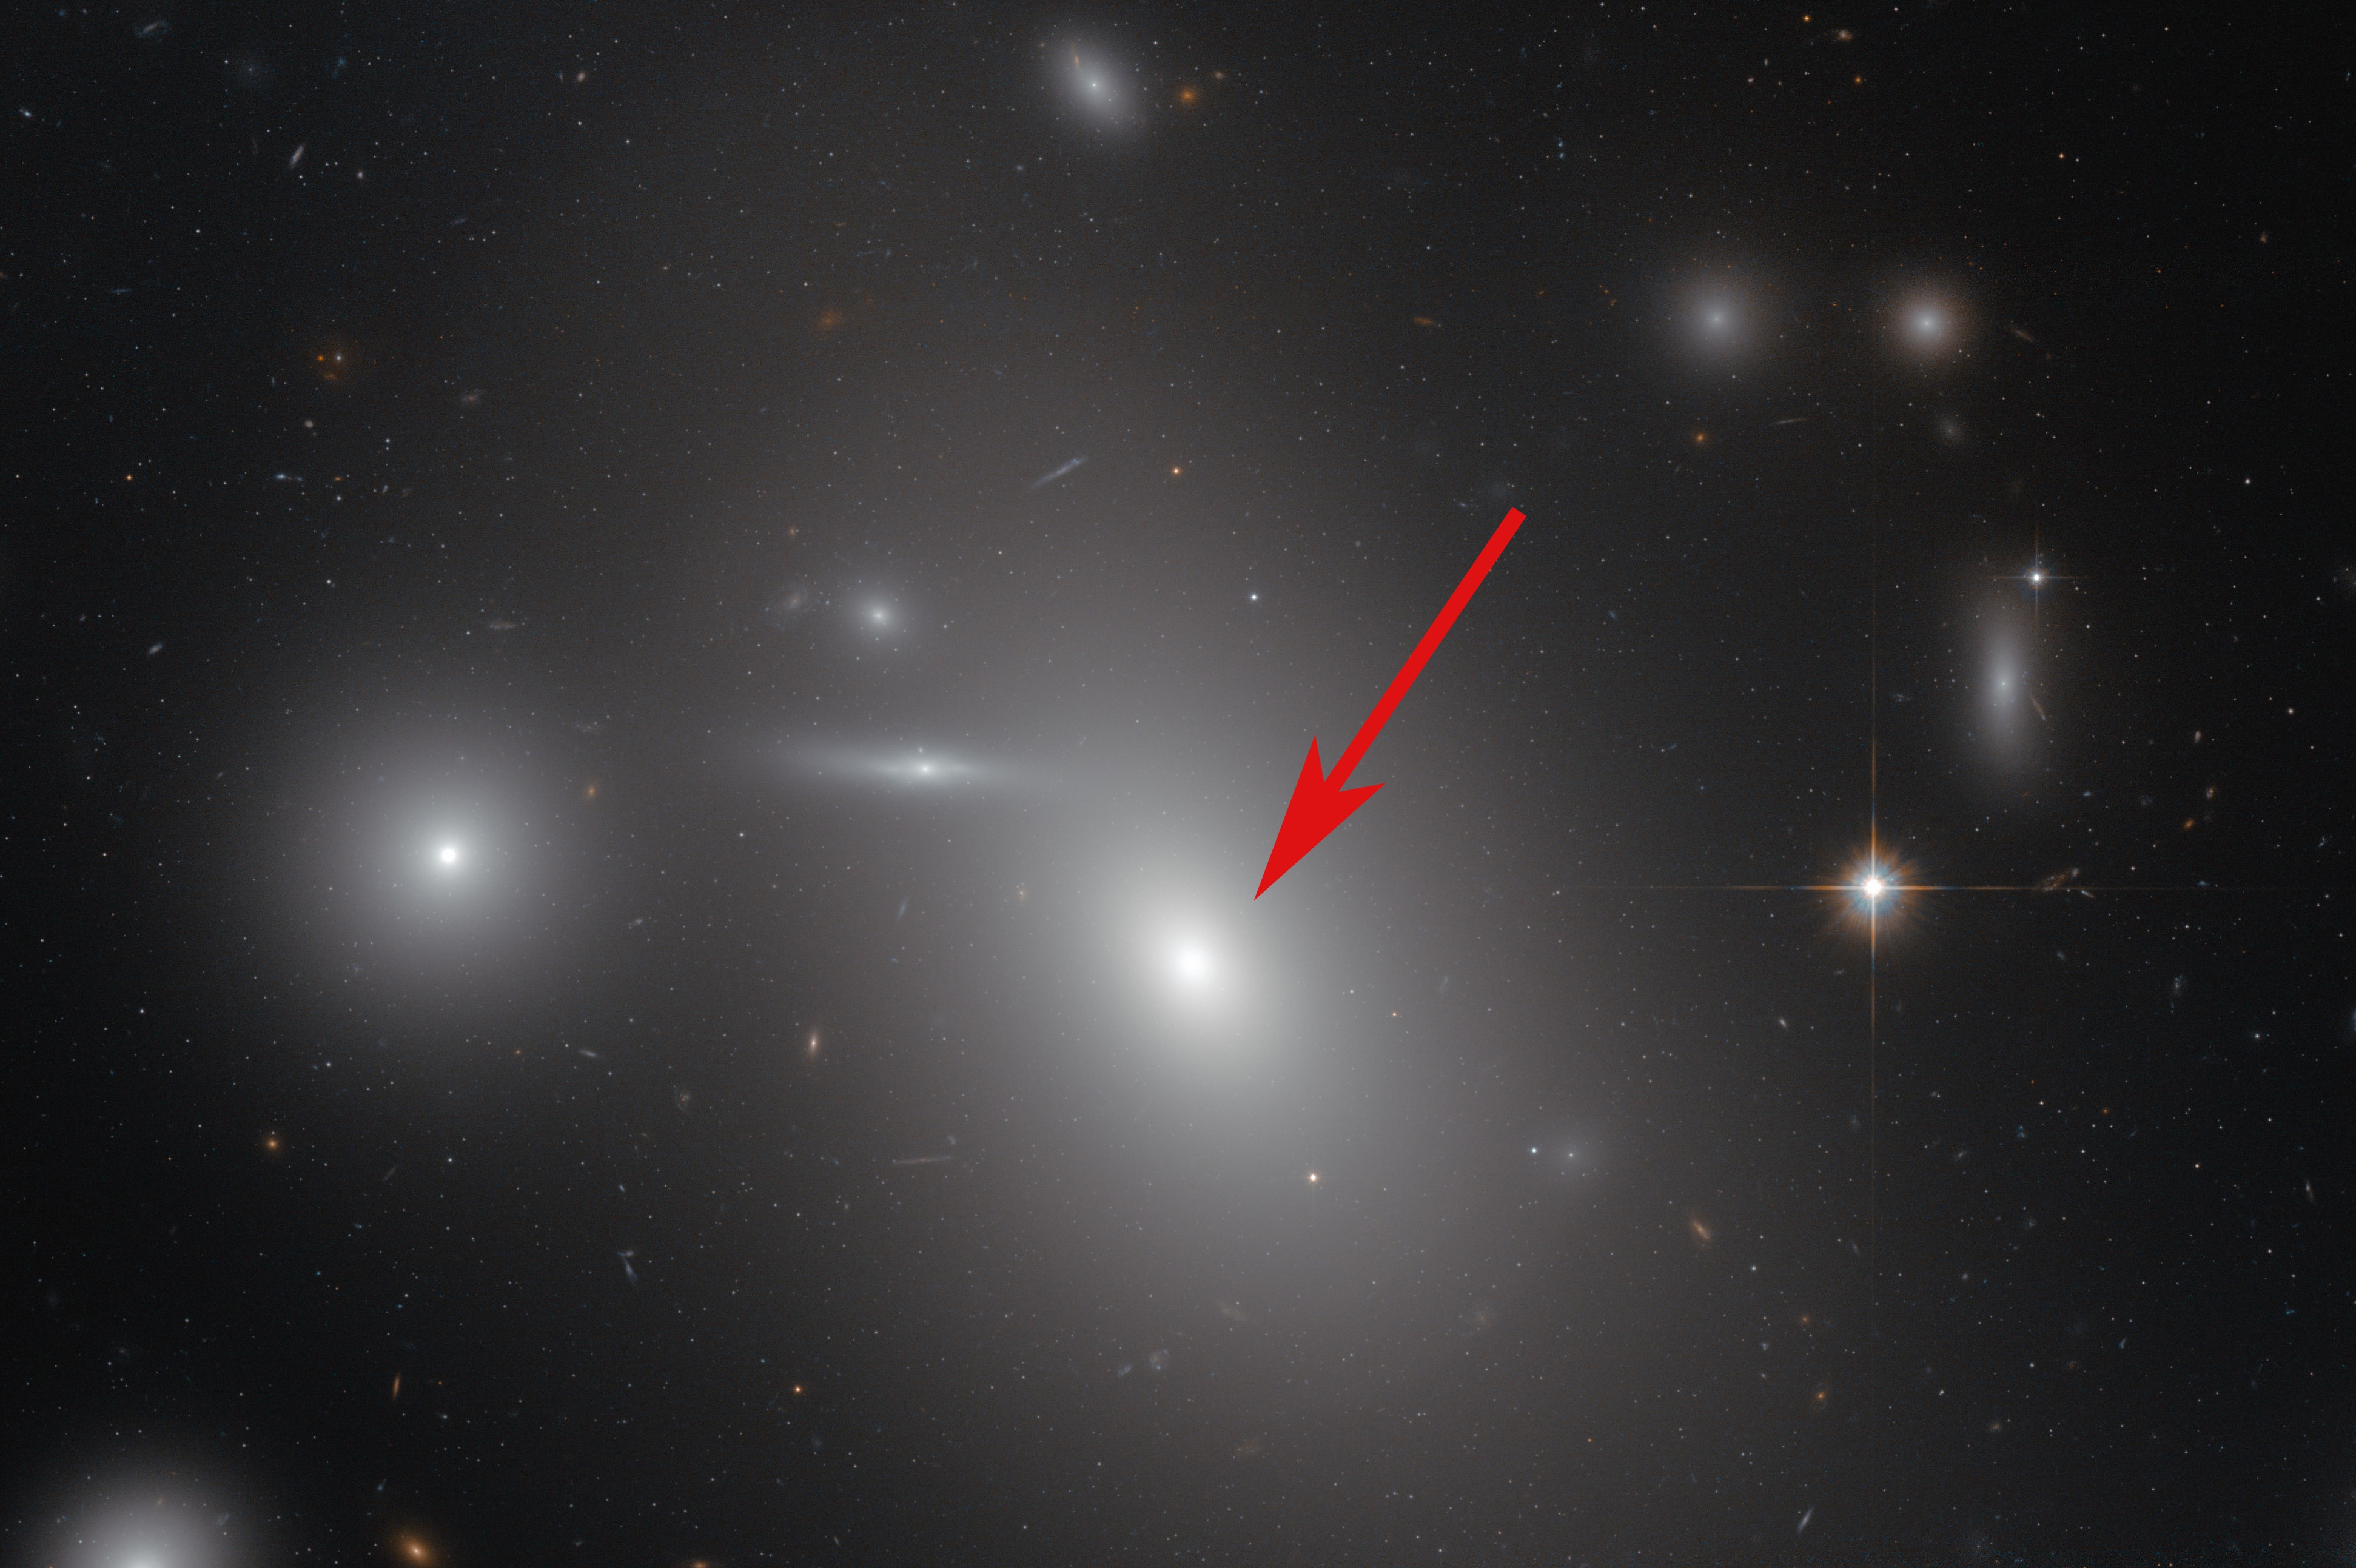 4 5 световых года. NGC 4889 Галактика. NGC 4889 черная дыра. Ic 1101 черная дыра. Звезда большого пса во сравнению ic 1101.